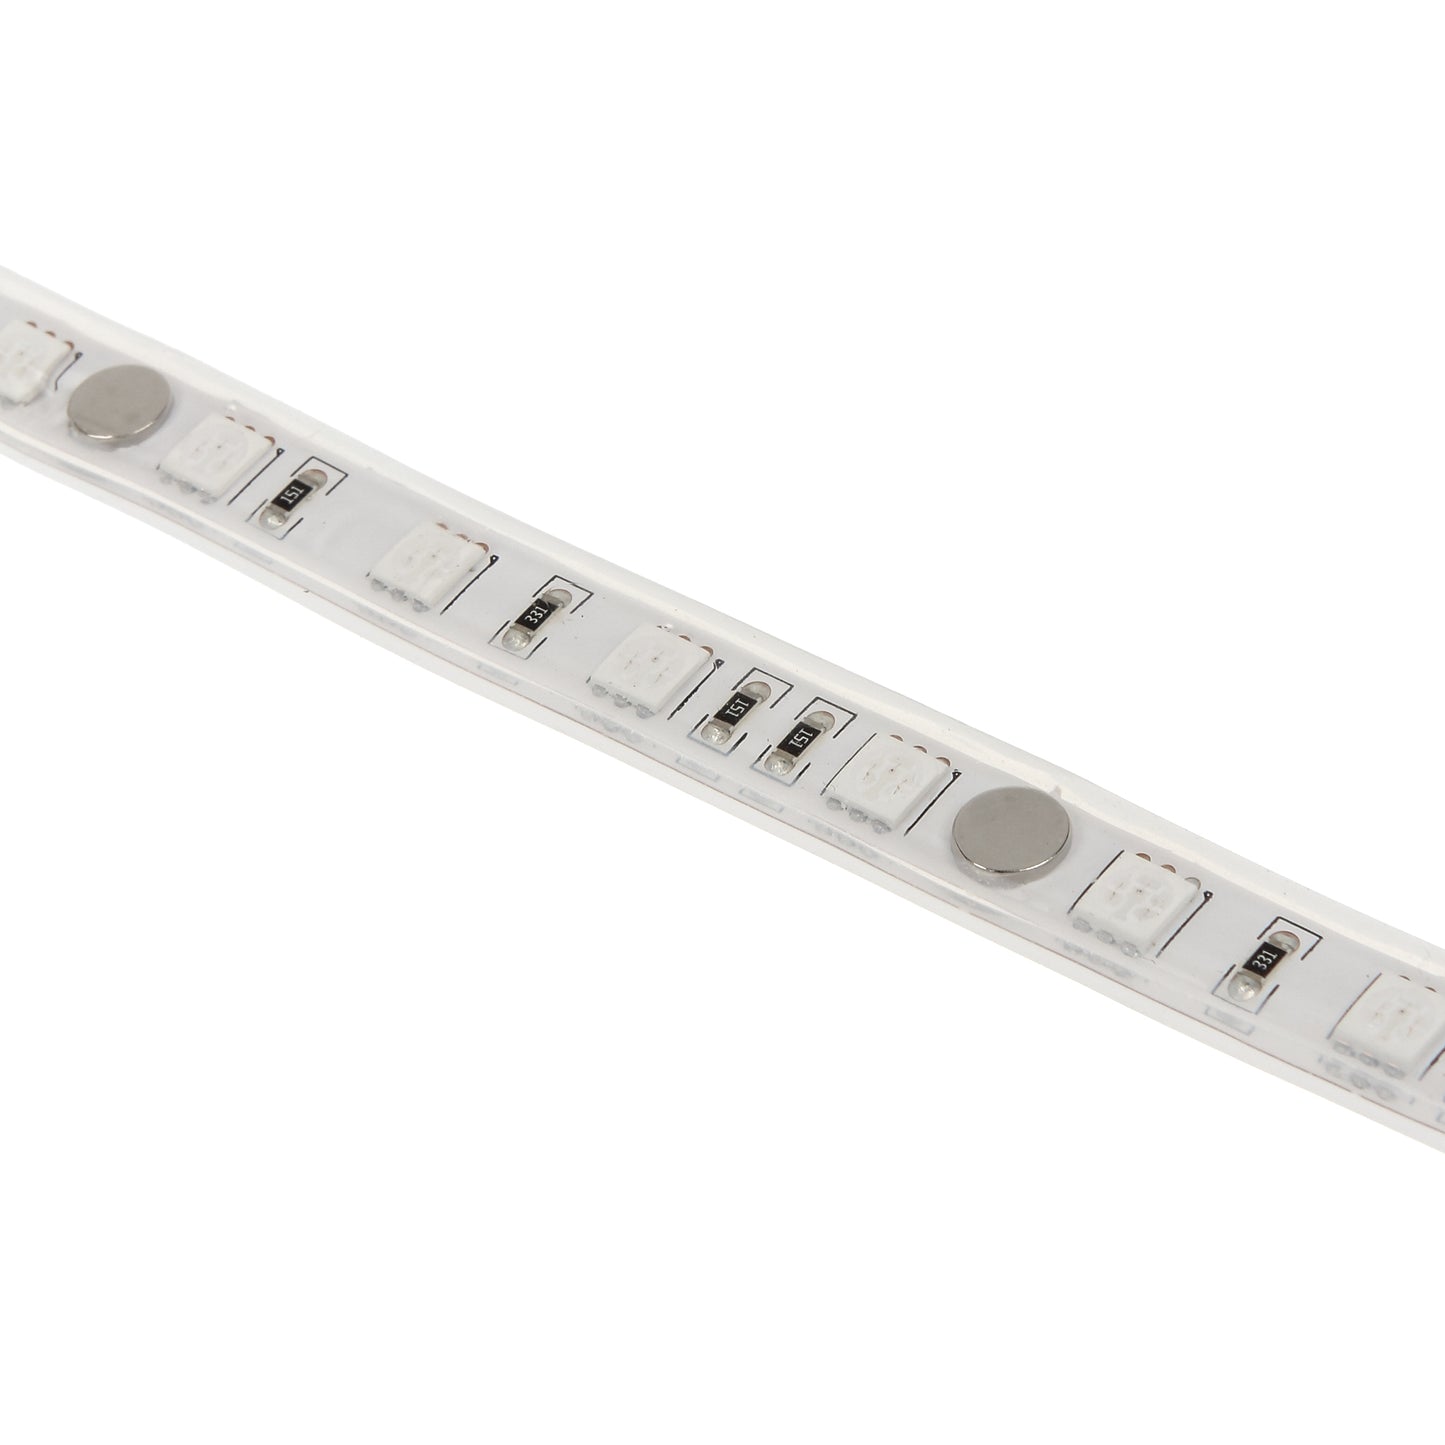 Phanteks LED Strip for 10 in one 400mm Length Cases (PH-LEDKT_M4)